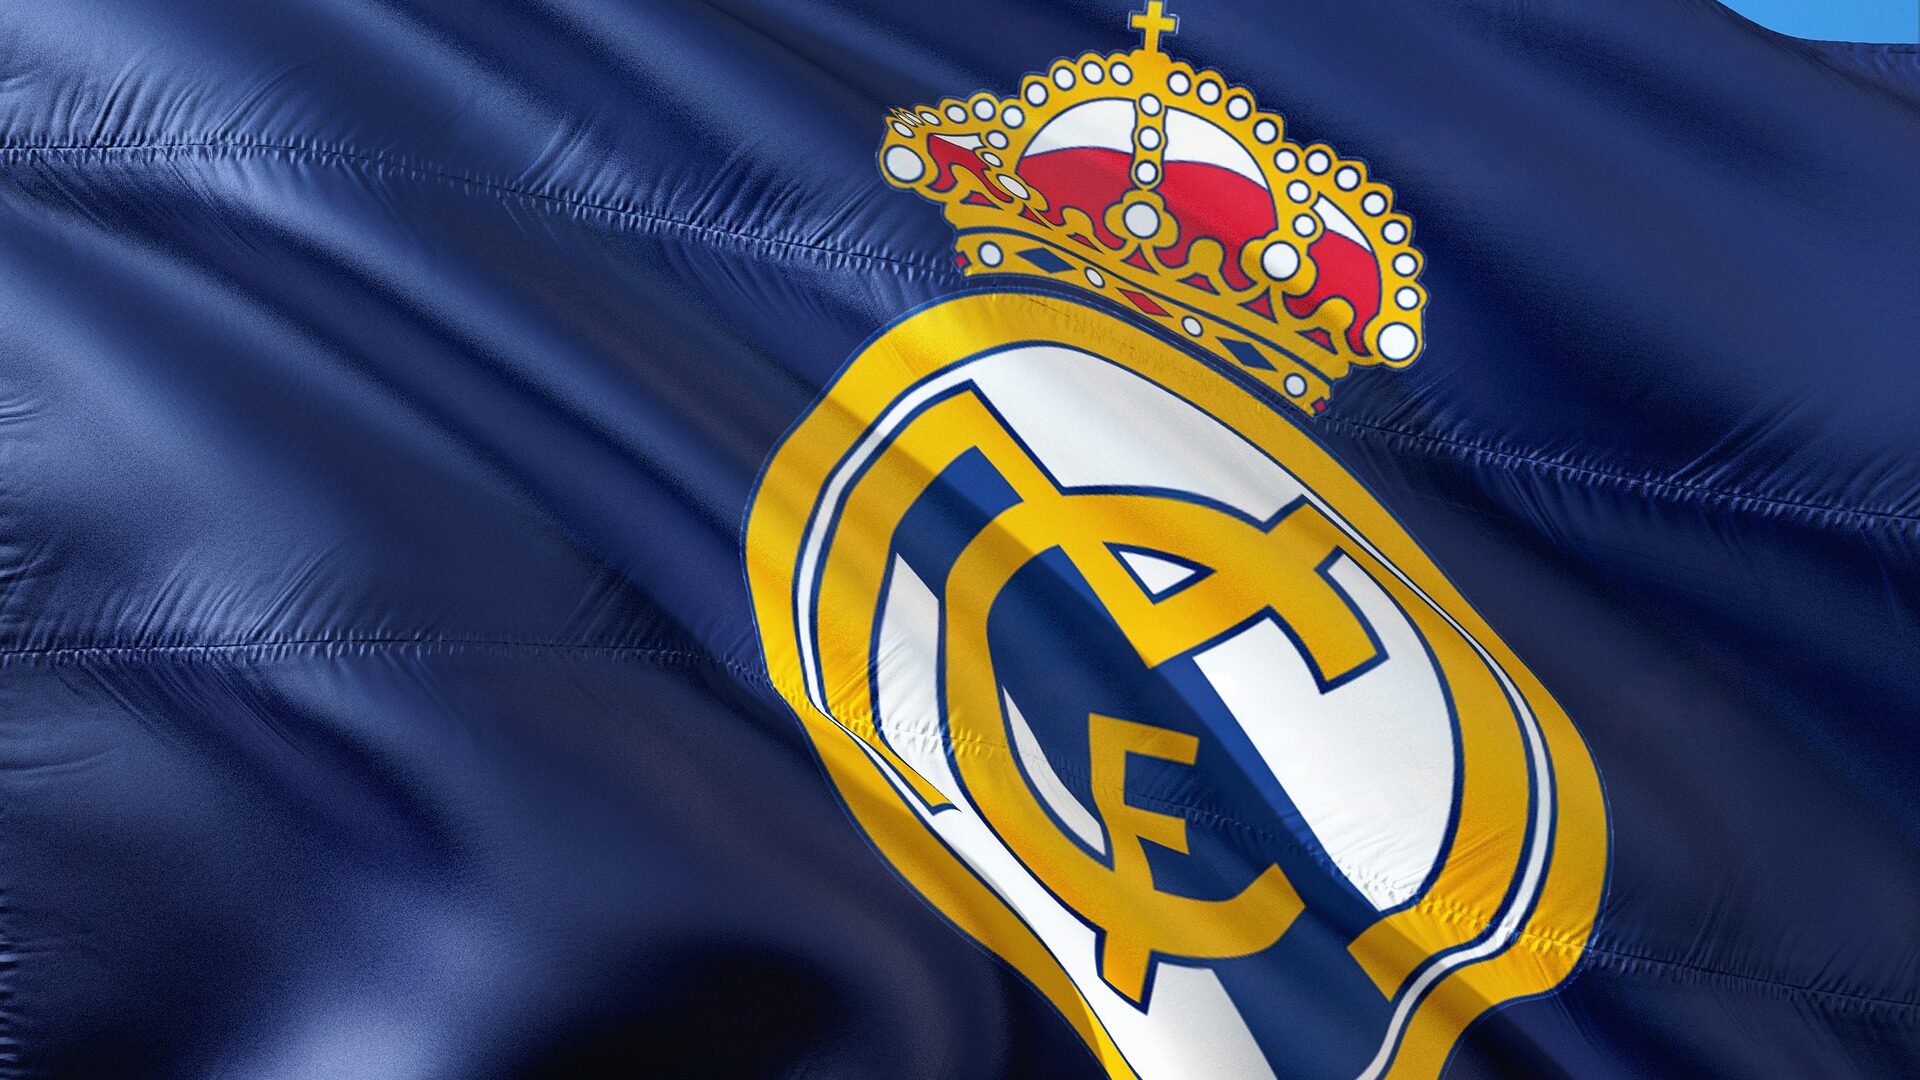 Real Madrid edited